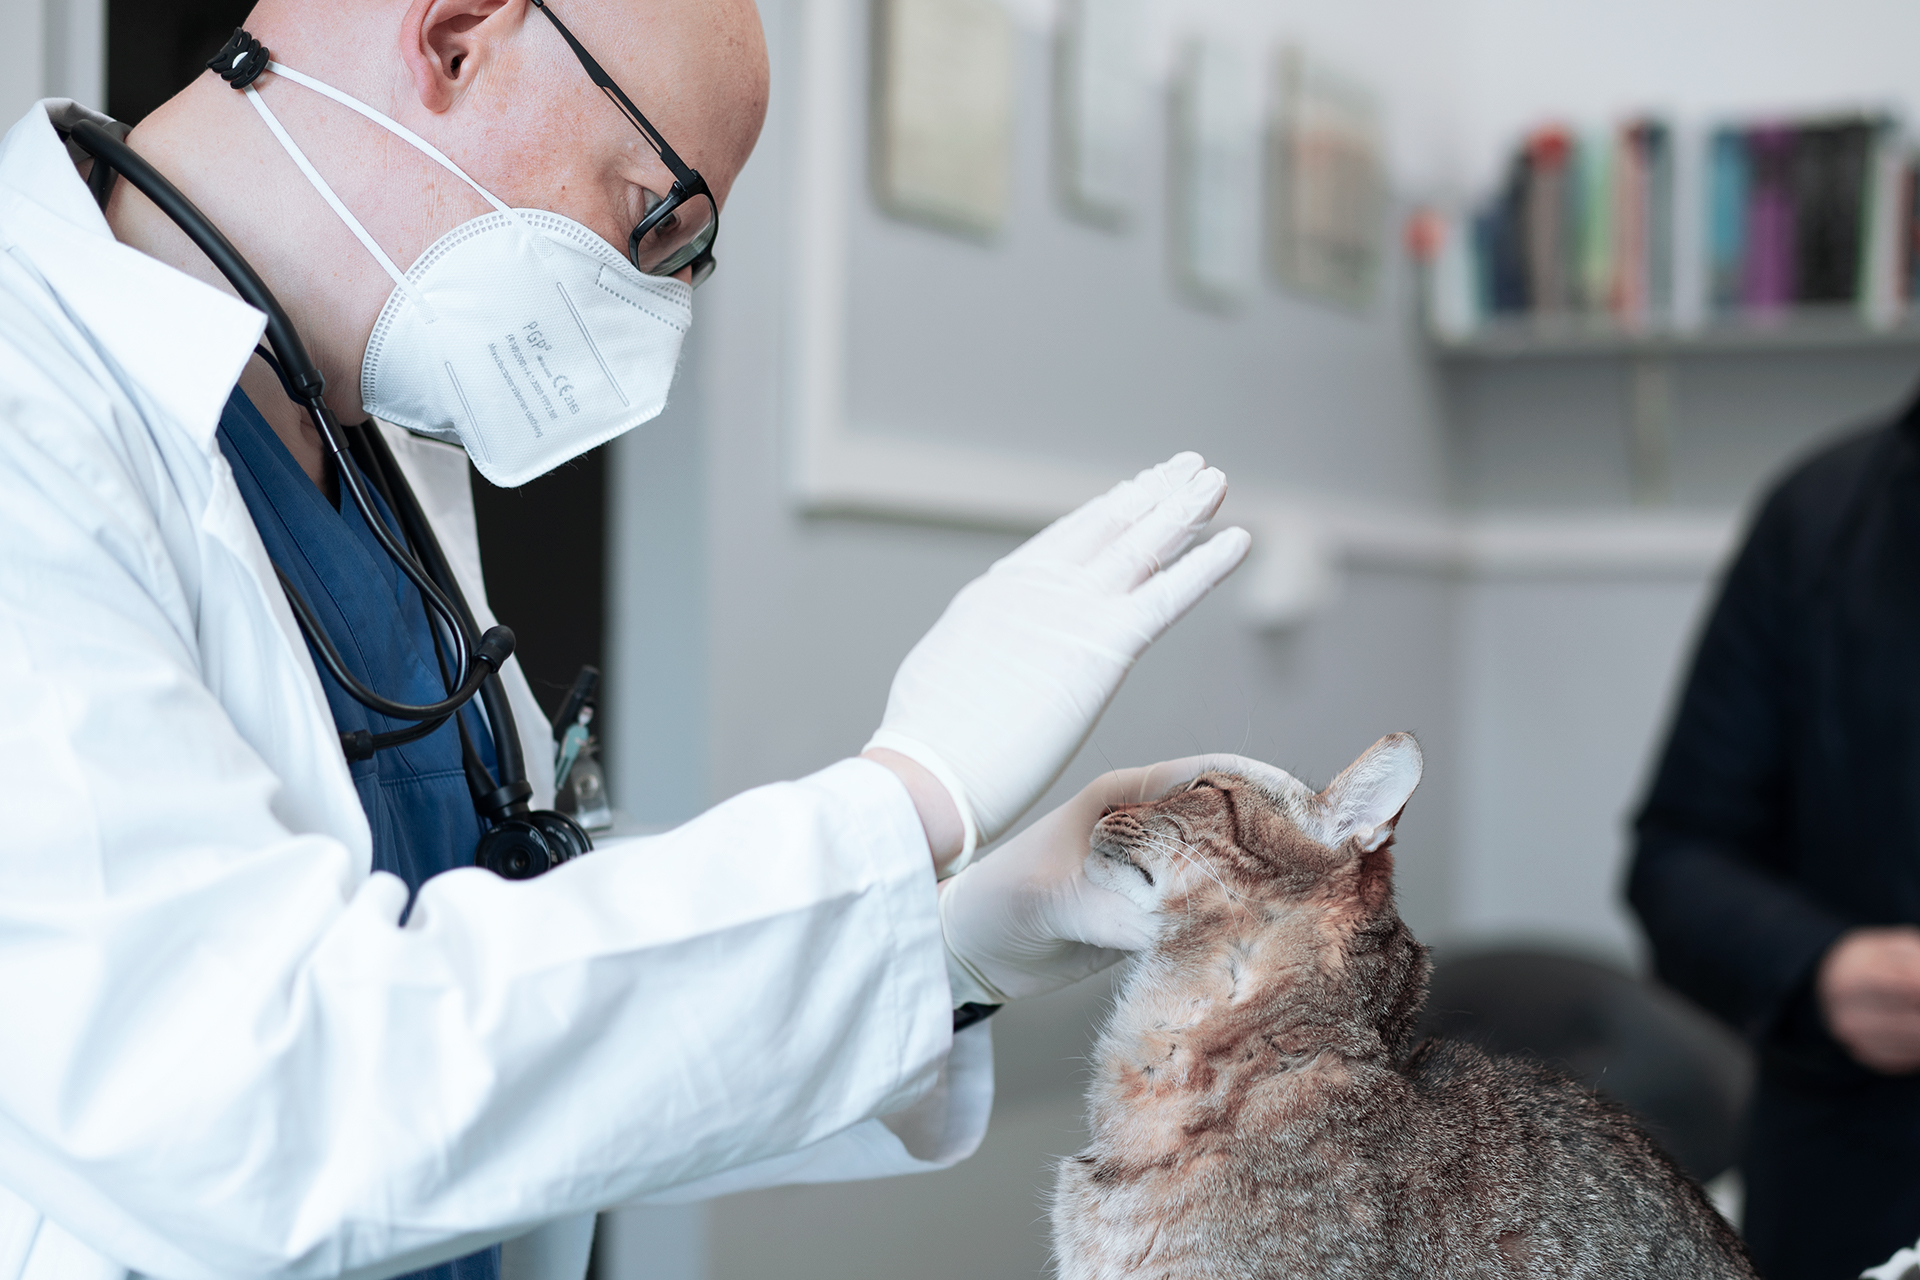 test reazione alla minaccia gatto neurologo veterinario torinono neurologo reazione minaccia gatto